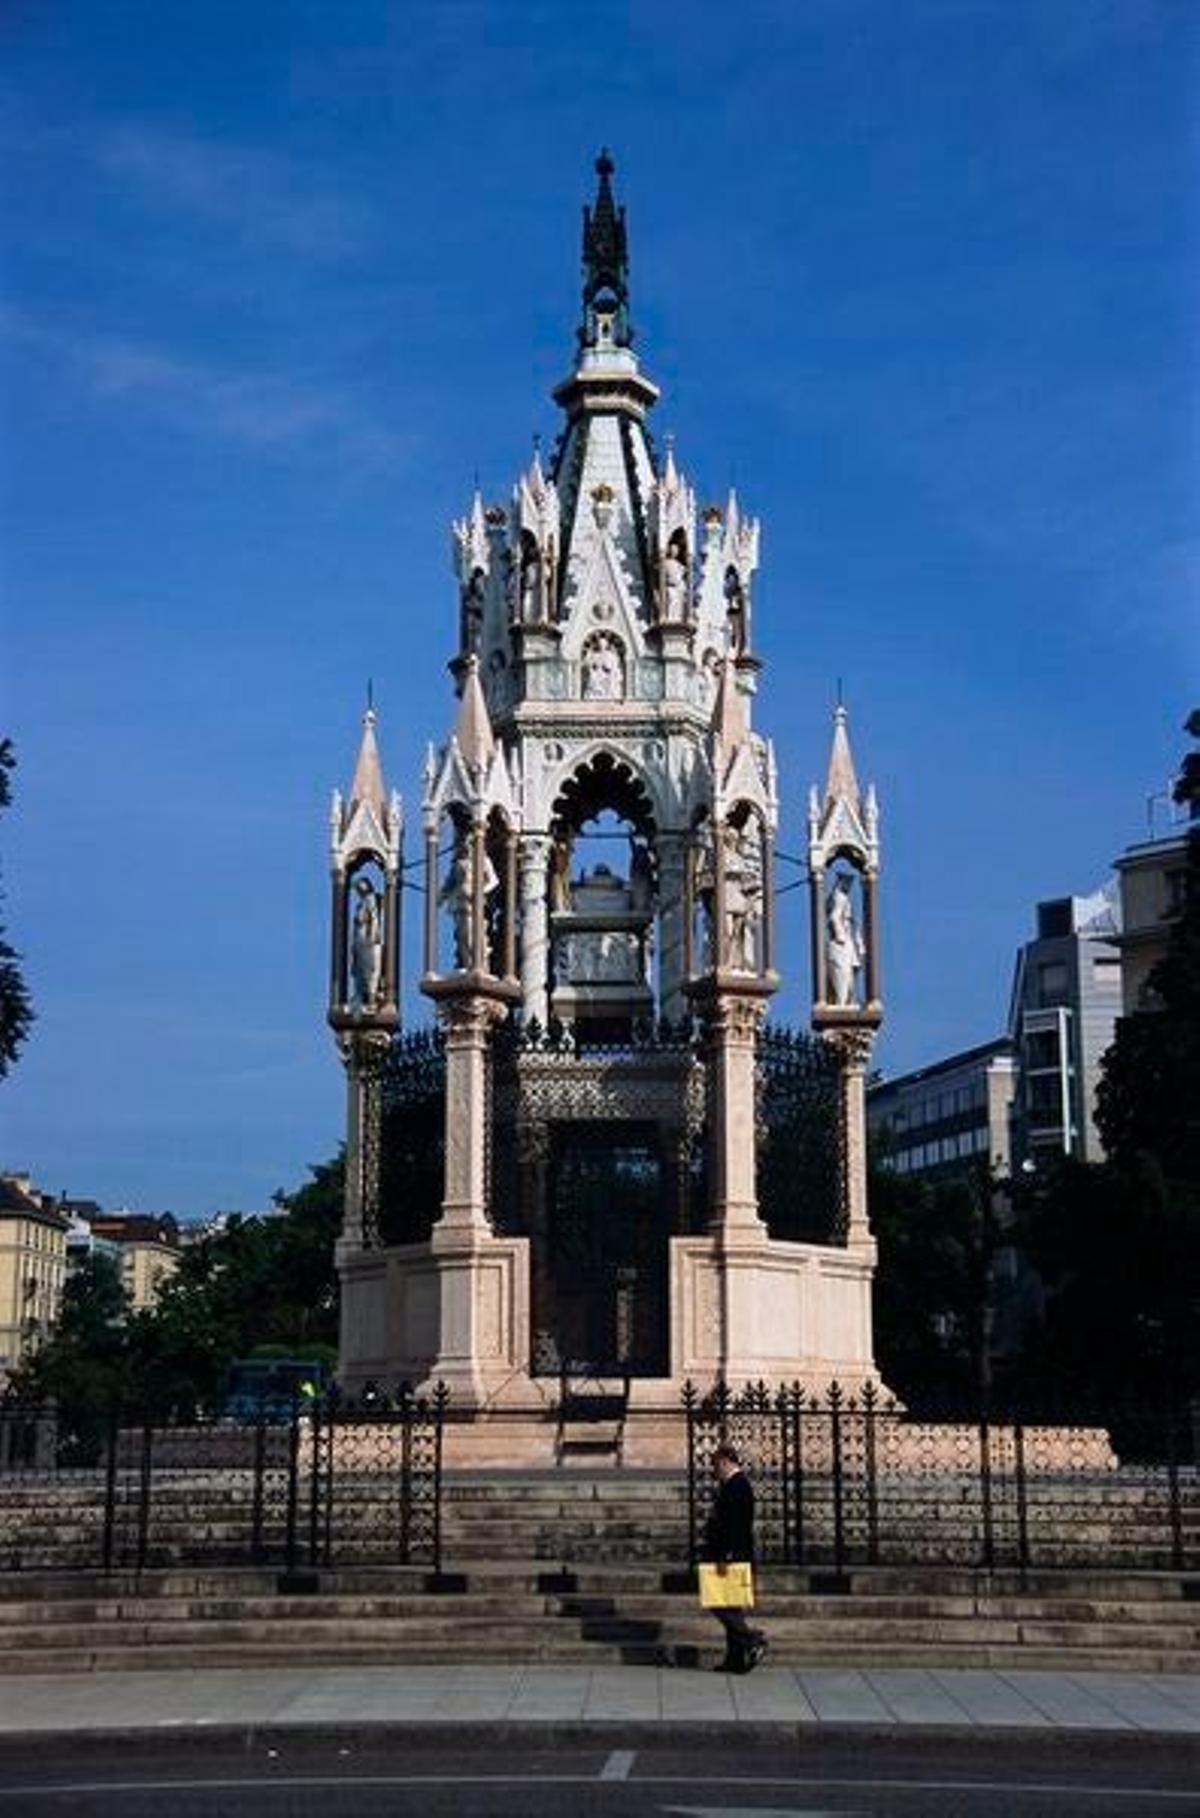 El Duque Carlos II de Brunswick, a quien está dedicado el mausoleo, murió en 1873